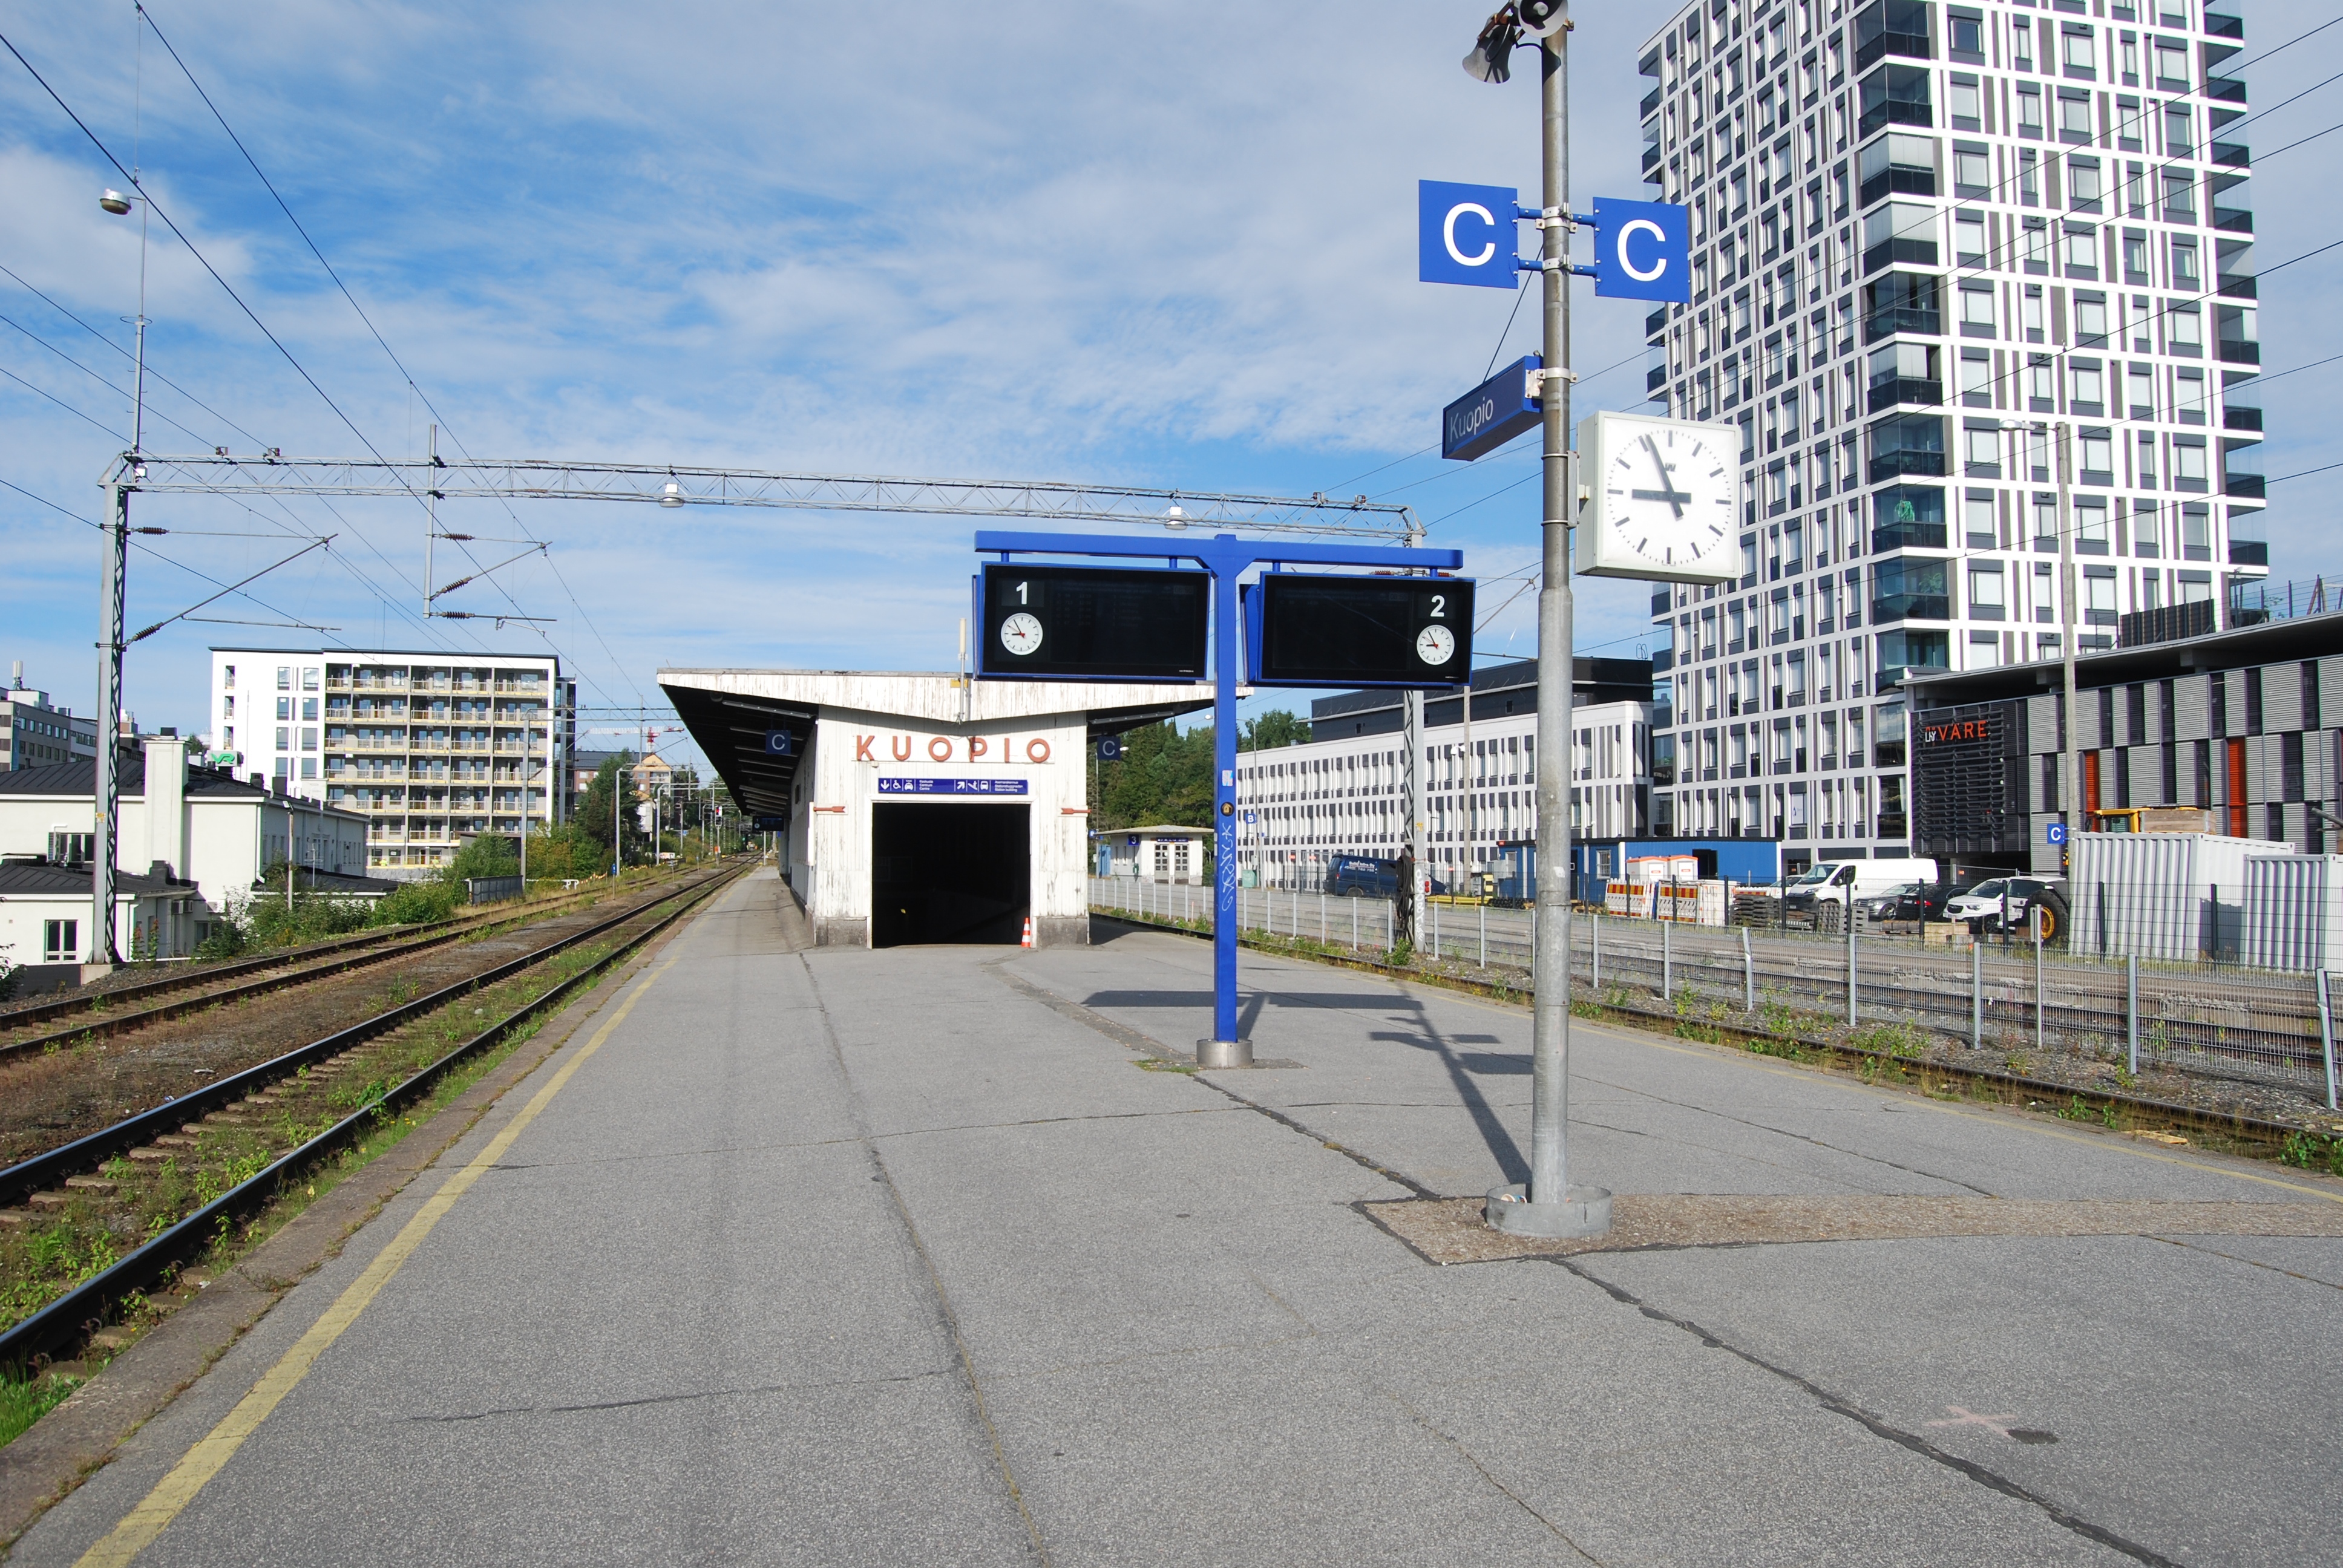 Kuopion ratapiha -hankkeen kuvituskuva, jossa on näkymä Kuopion juna-aseman katoksesta ja kyltistä, jossa lukee Kuopio